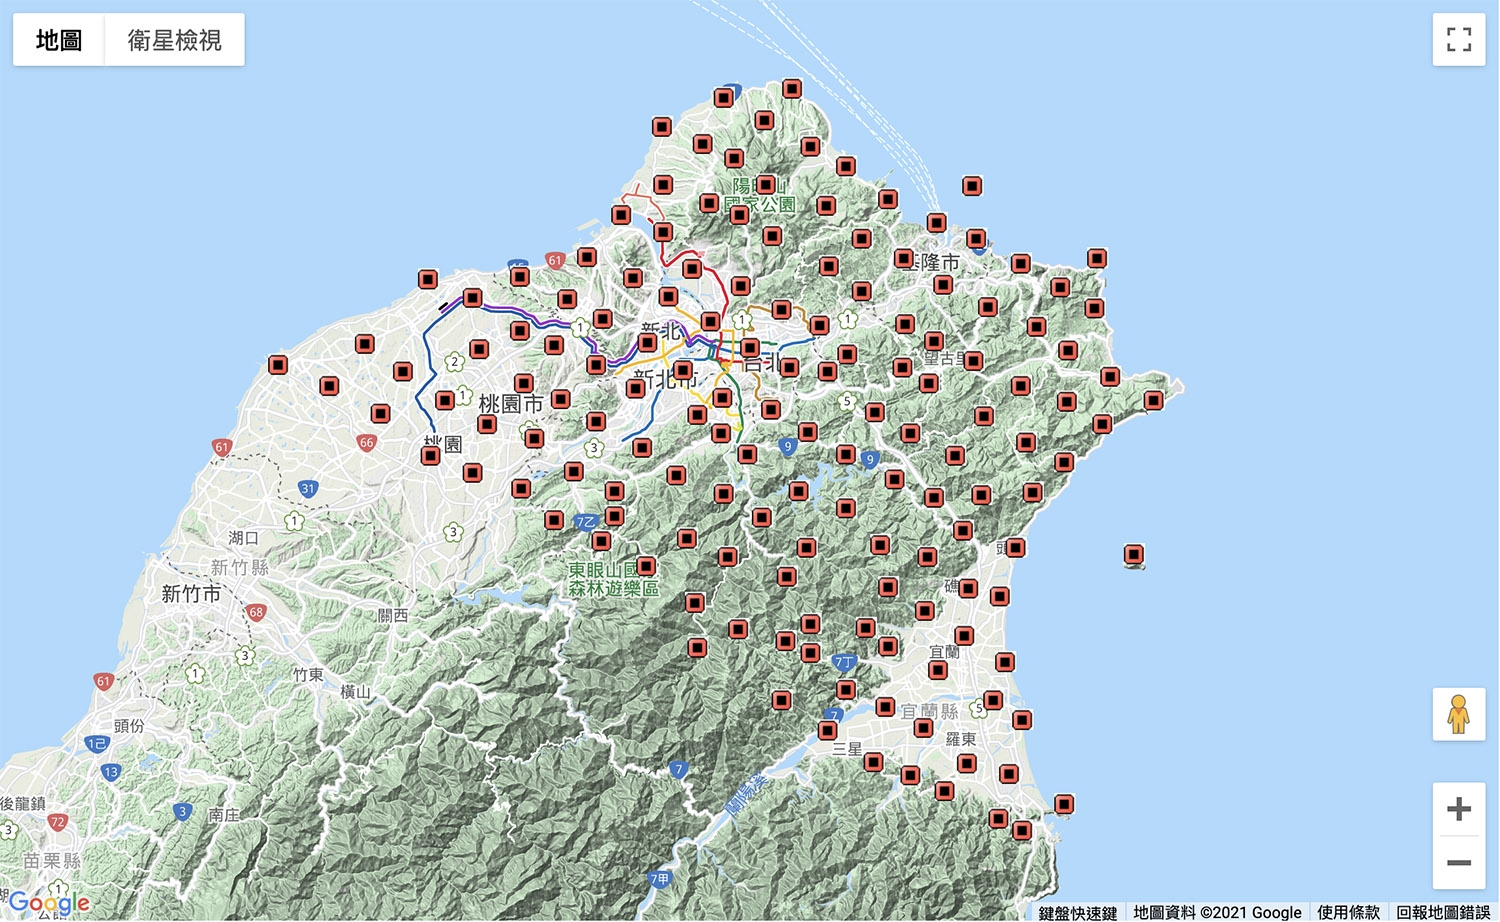 臺灣陣列地震站分布圖，圖中約有 140 個測站，安裝有寬頻地震儀並即時蒐集傳送地震資料，此計畫由中央研究院地球科學研究所（IES）與大屯火山觀測站（TVO）共同執行。 圖│Formosa Array 臺灣陣列 